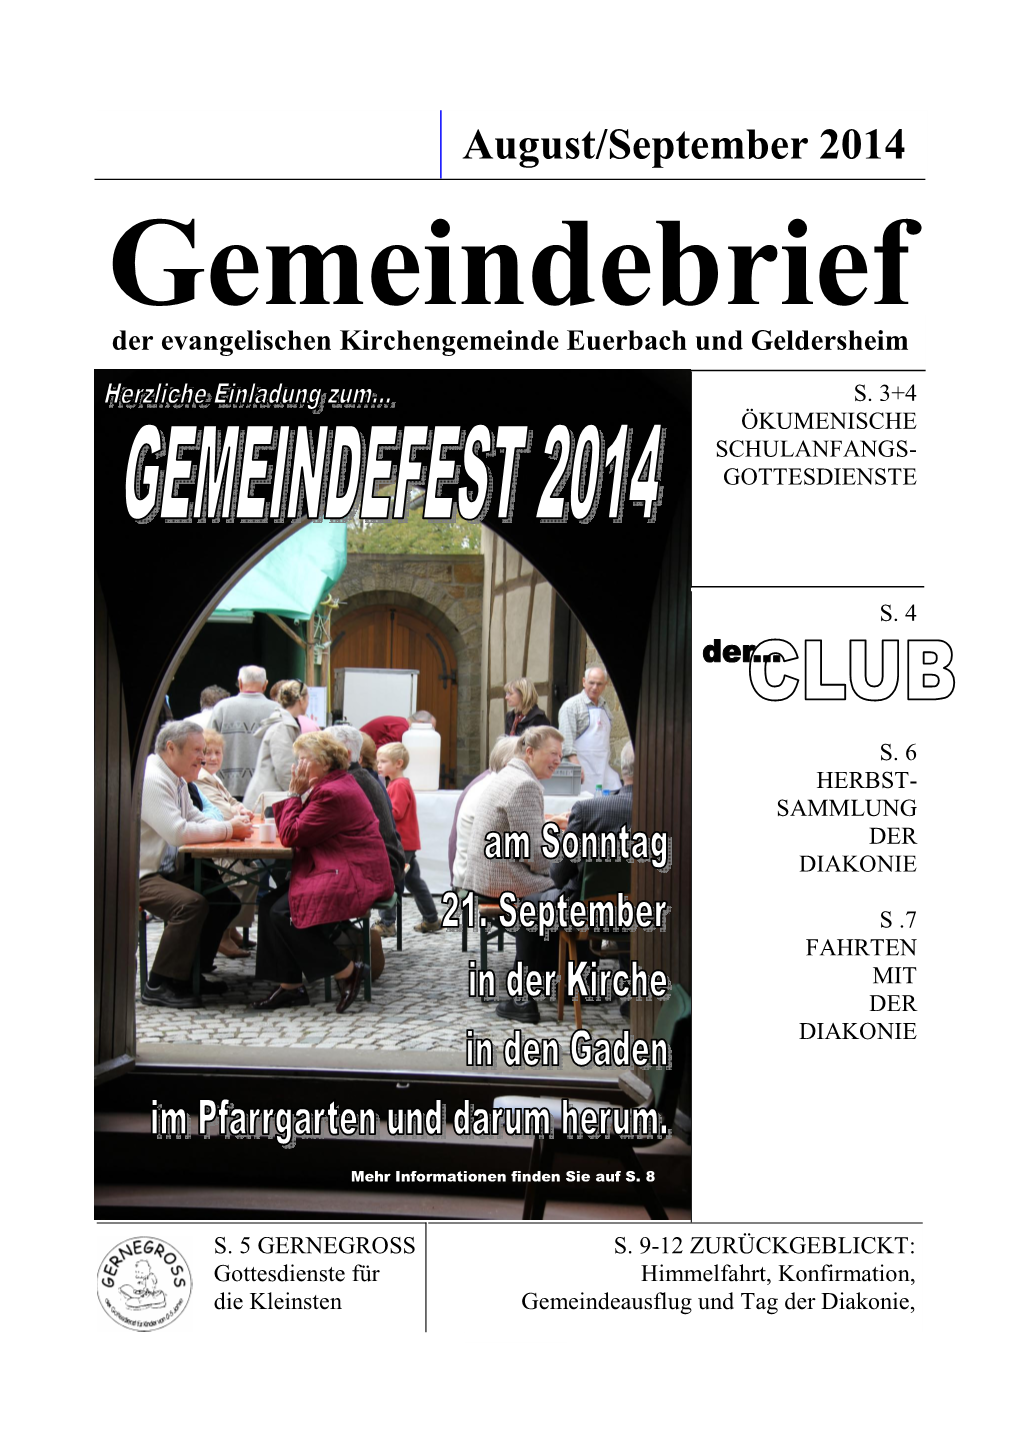 Gemeindebrief Aug-Sept 2014